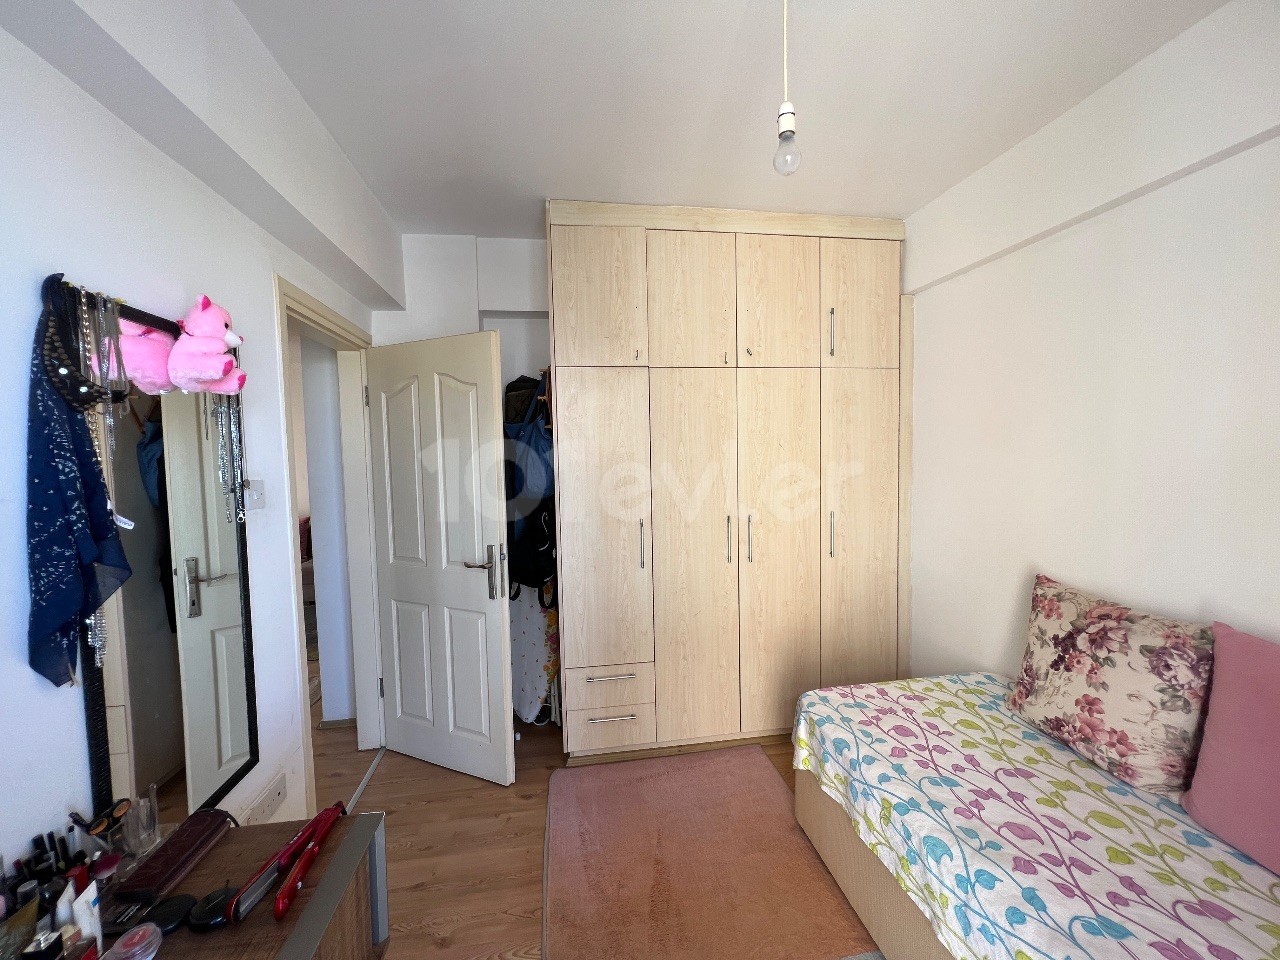 Продается полностью меблированная квартира 2+1 в районе Ноянлар в районе Фамагусты Чанаккале.